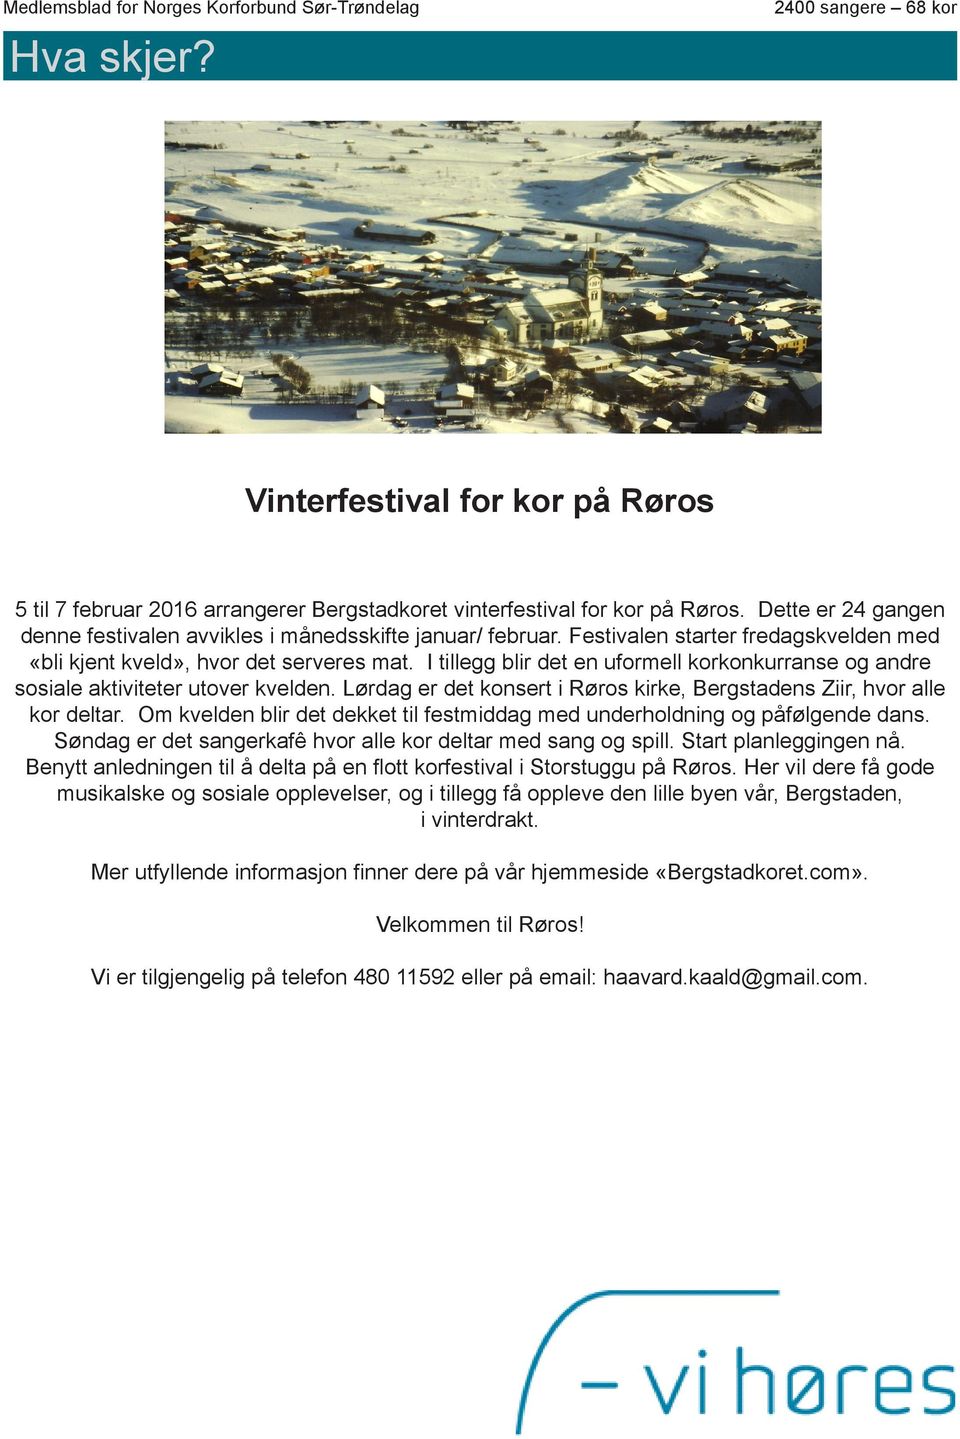 Medlemsblad for Norges Korforbund Sør-Trøndelag - PDF Free Download